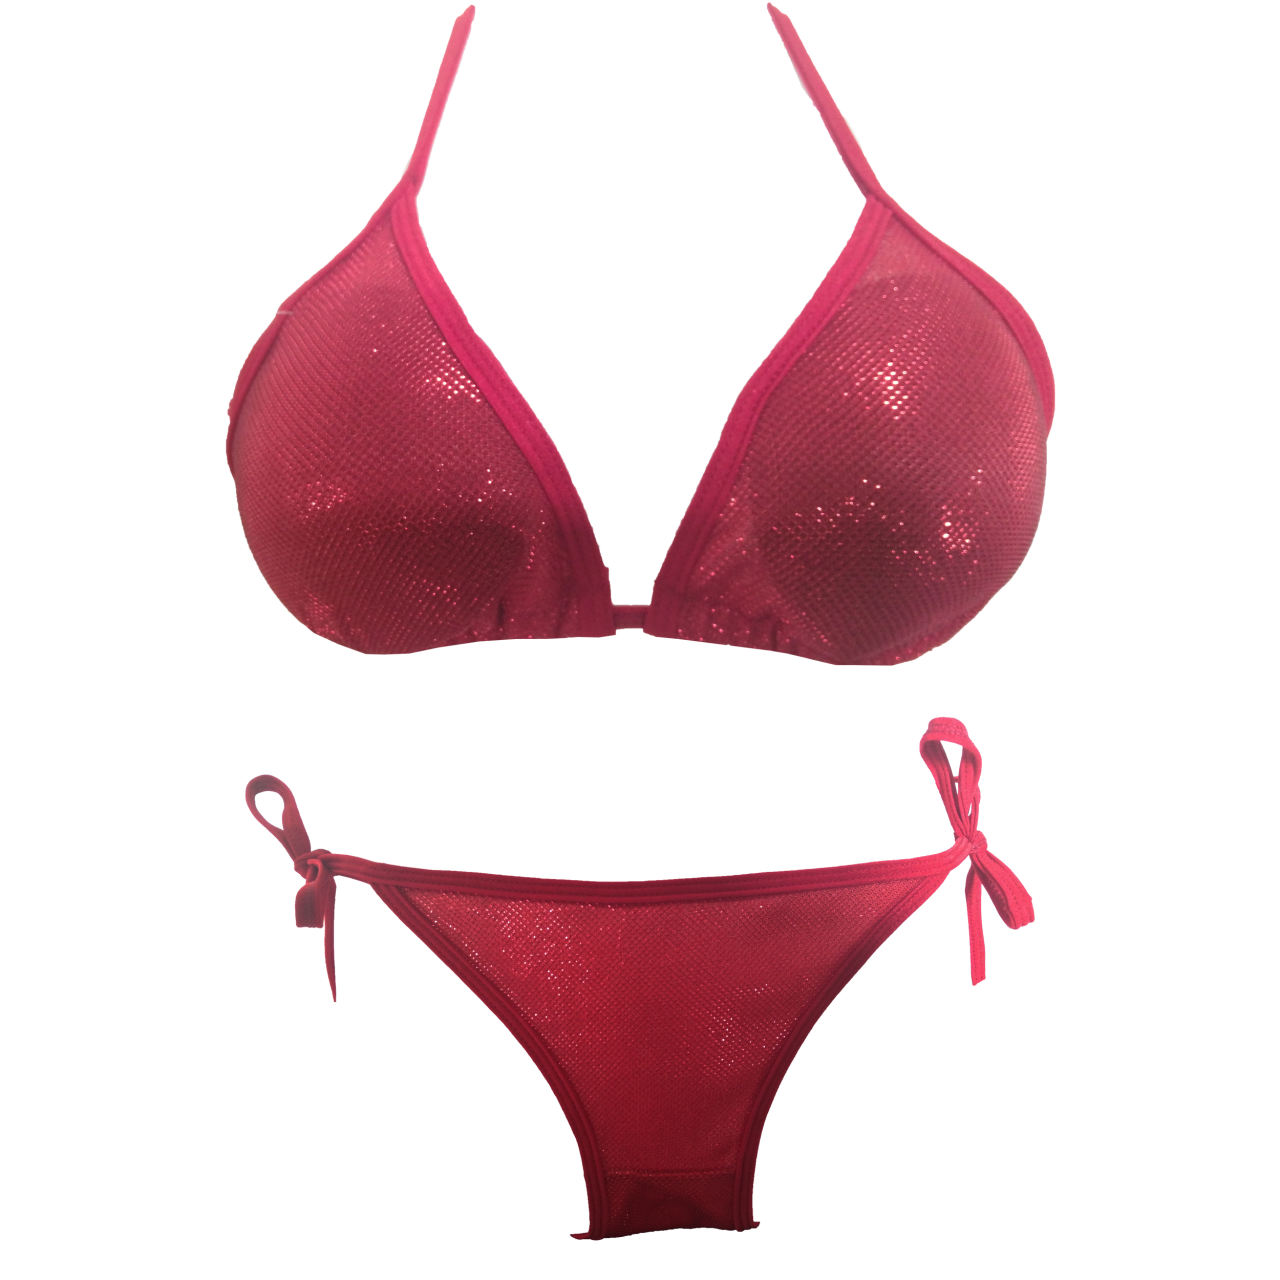 لباس شنا-مایو زنانه برند نامشخص-- مایو زنانه گالری تویین مدل Red Bikini کد T571 - سرخابی تیره براق